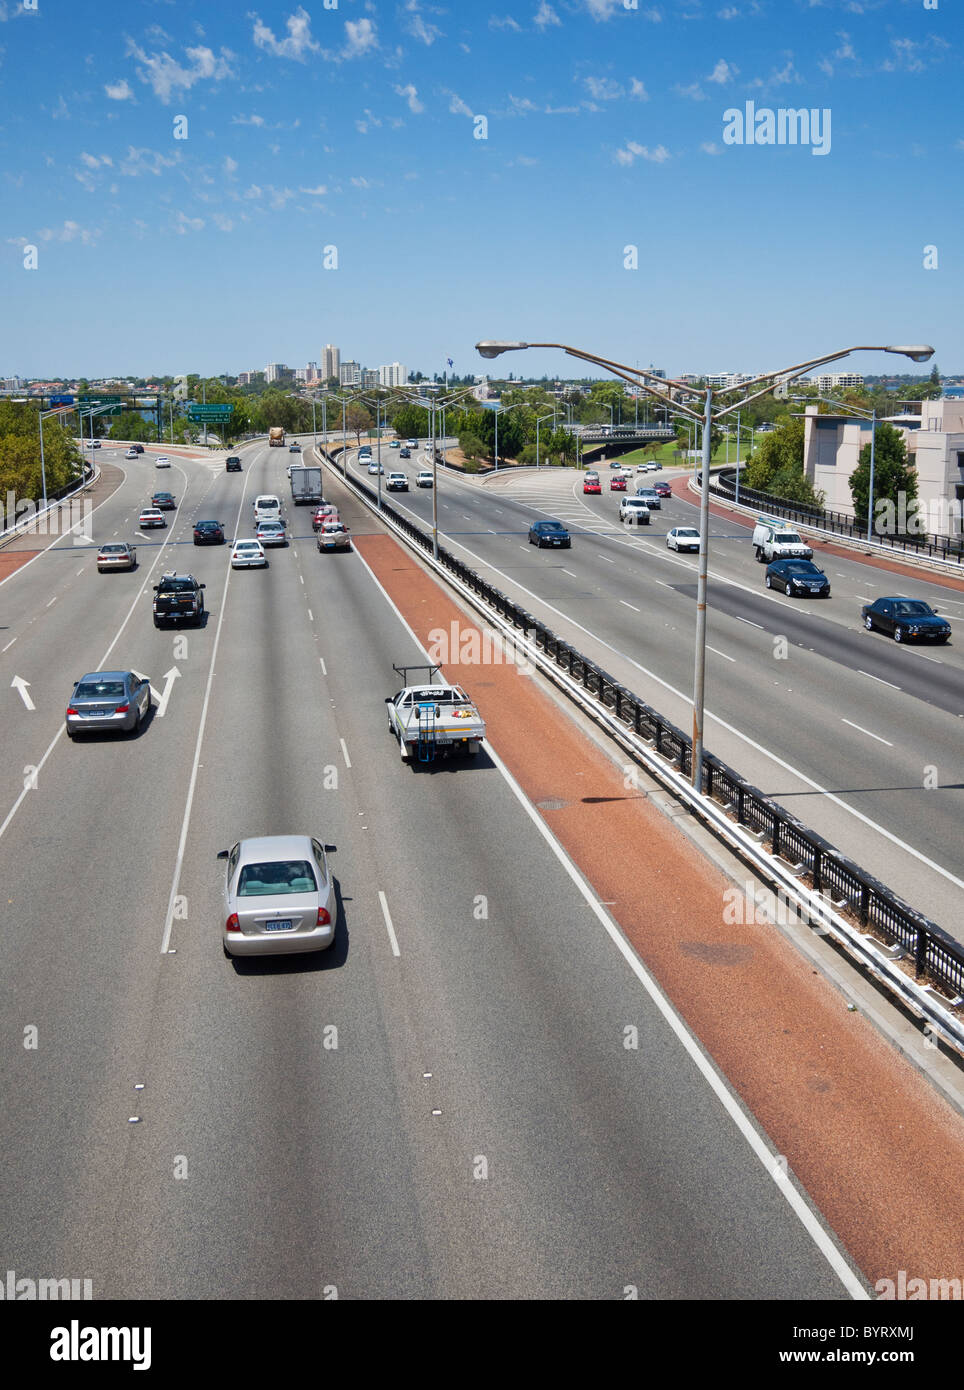 Le trafic sur une autoroute australienne à Perth, Australie occidentale Banque D'Images